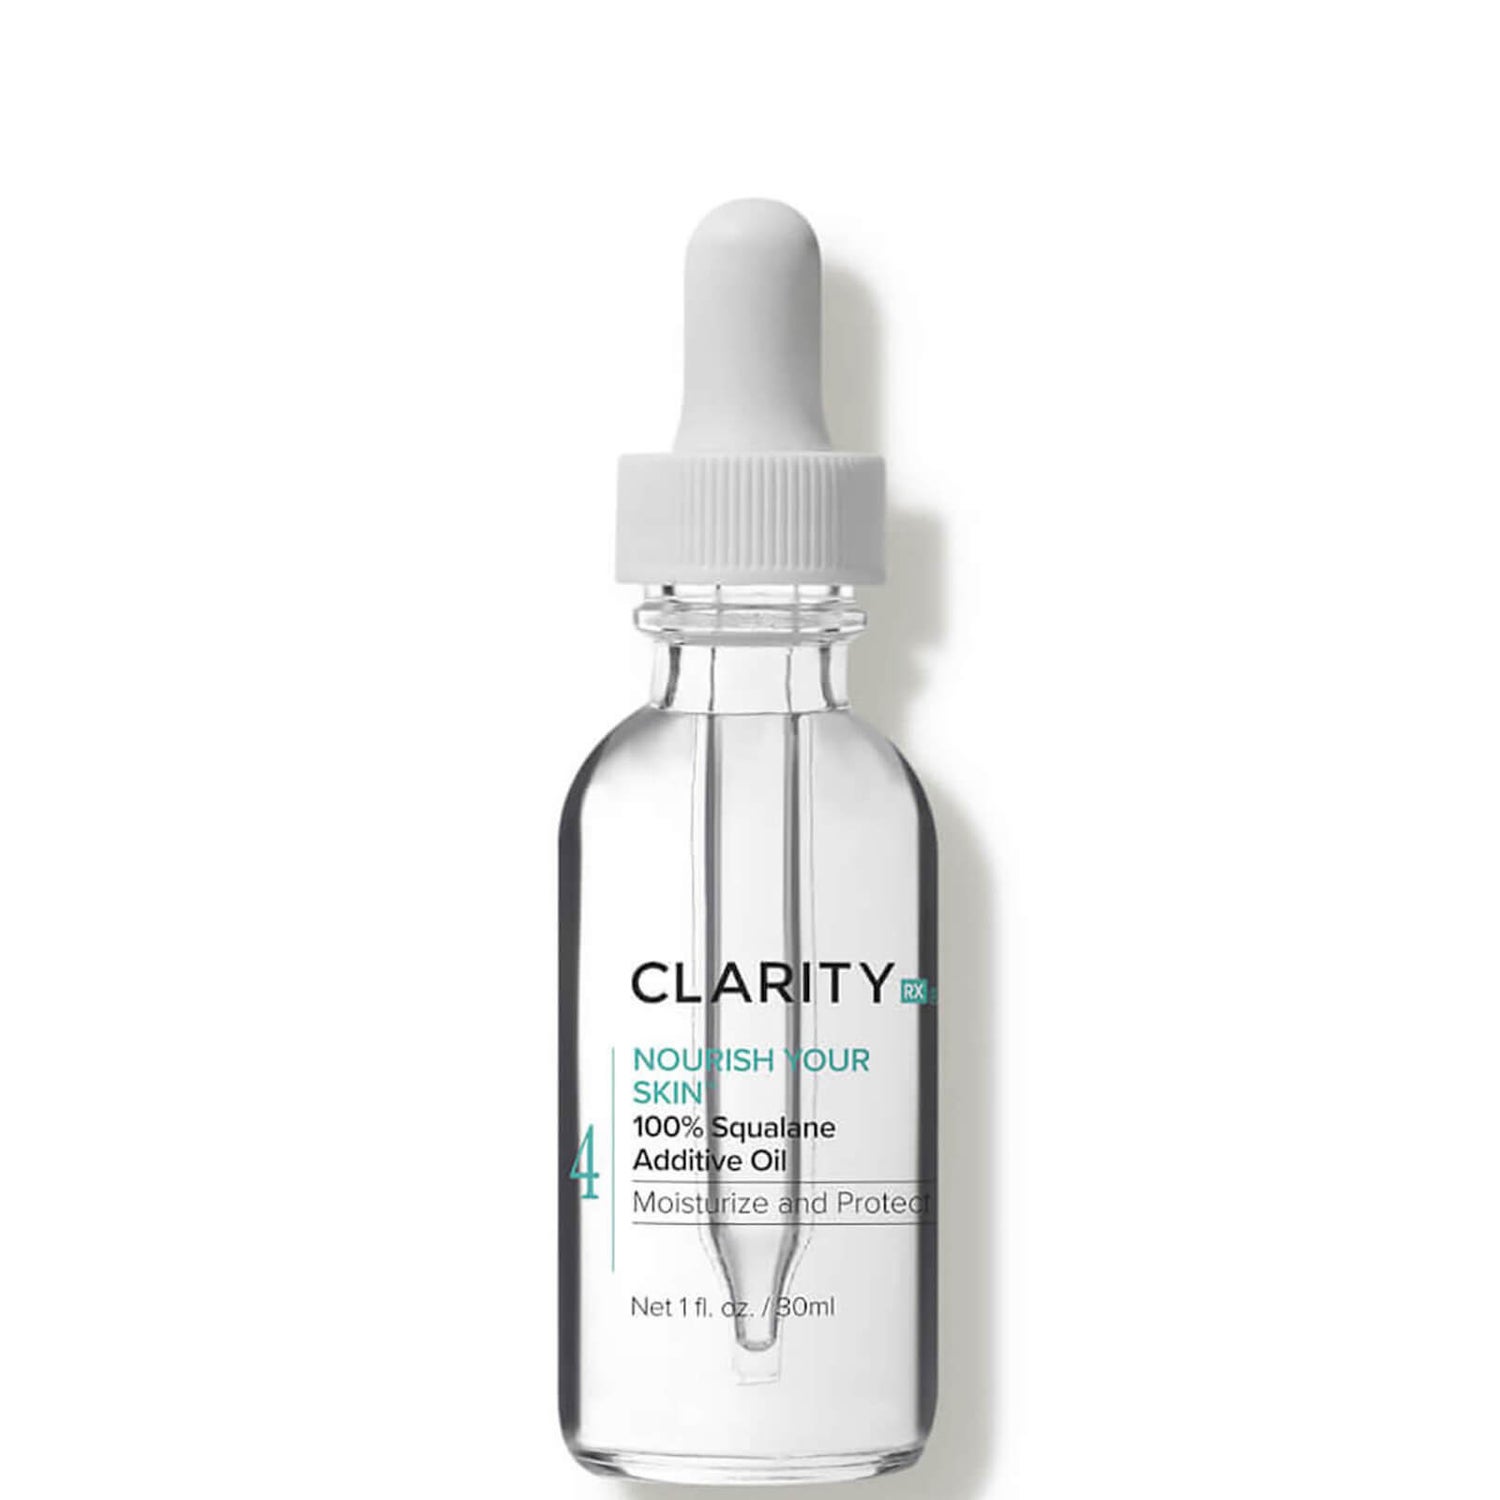 ClarityRx Nourish Your Skin 100 Percent Squalane Additive Oil 1 fl. oz.